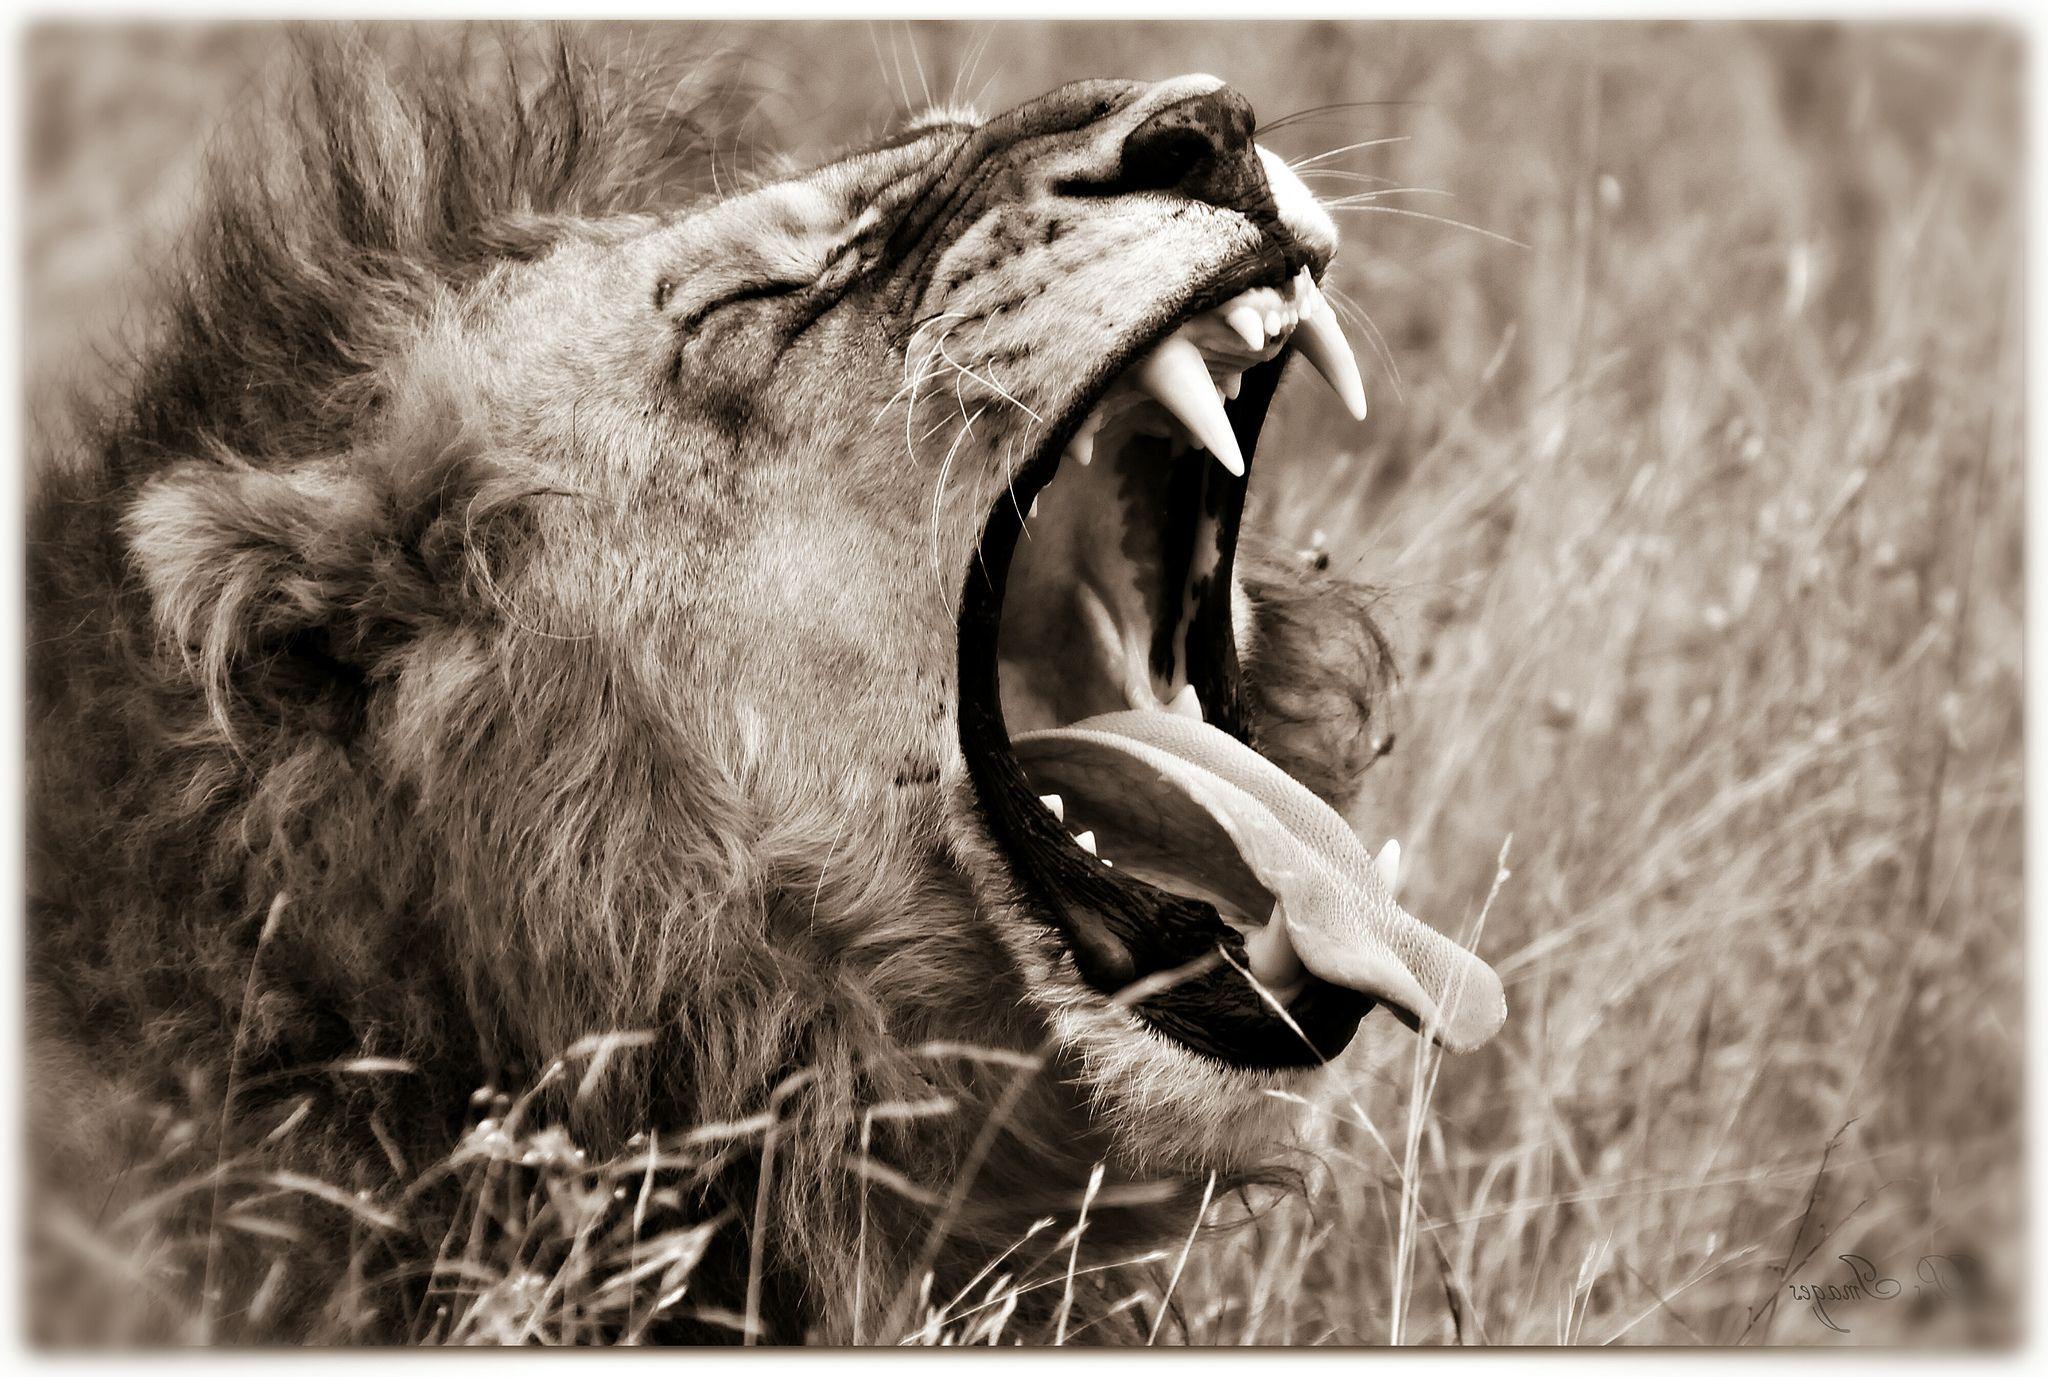 Big cats Lions Head Teeth Roar wallpaperx1377